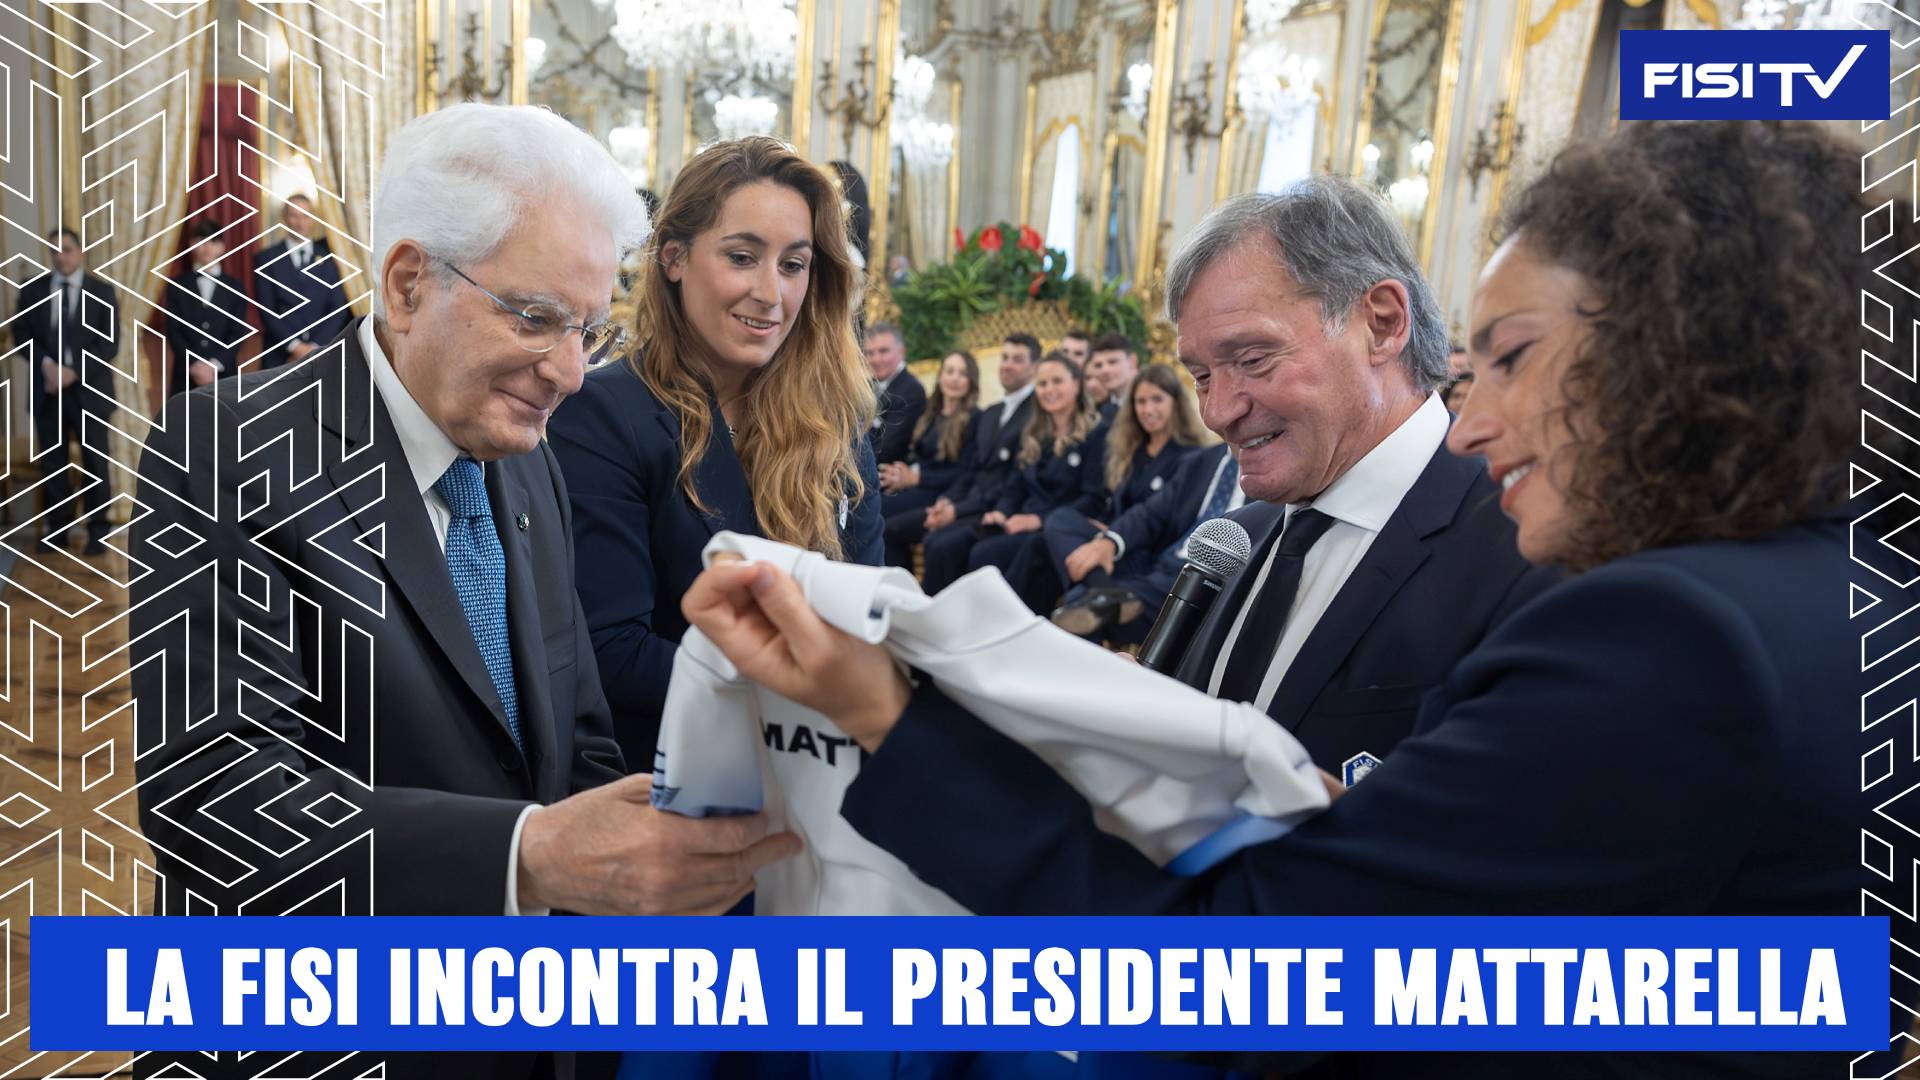 La FISI ospitata al Quirinale dal Presidente Mattarella | FISITV